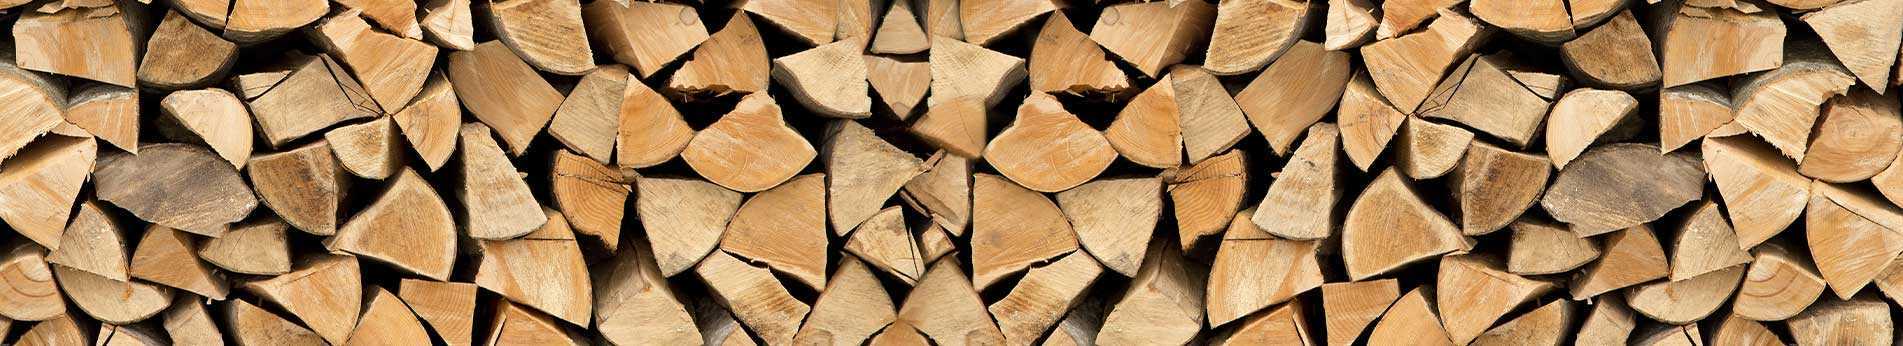 Taglio e lavorazione del legno